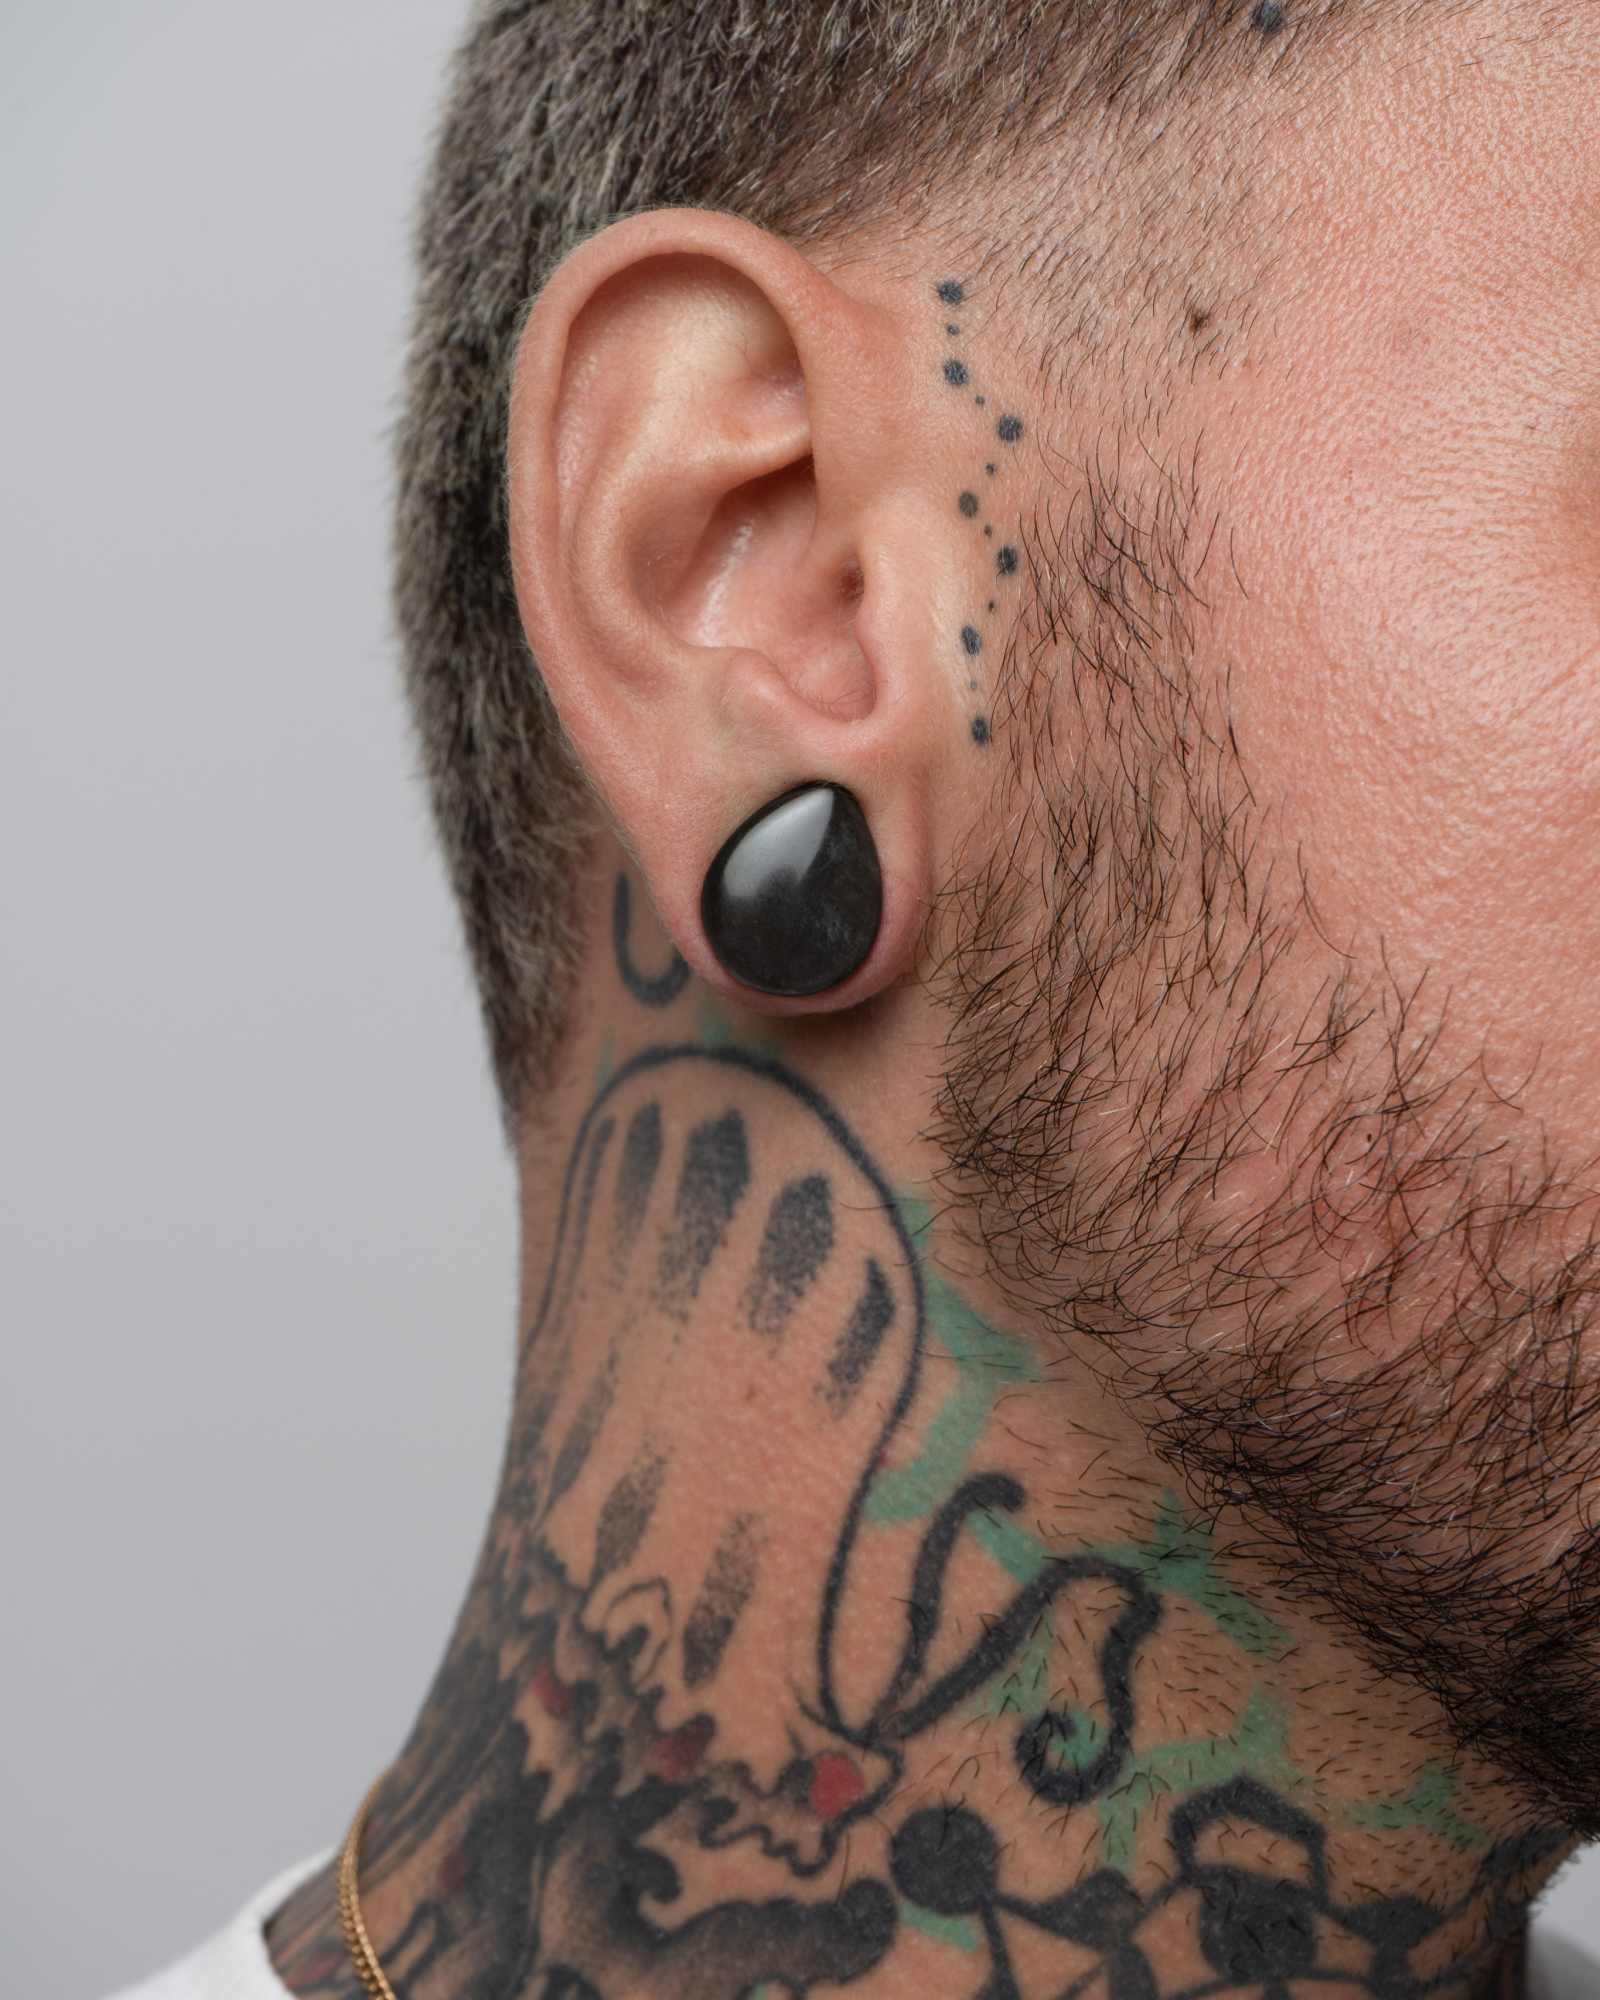 Teardrop gem tattoo | Tattoos, Gem tattoo, Single needle tattoo